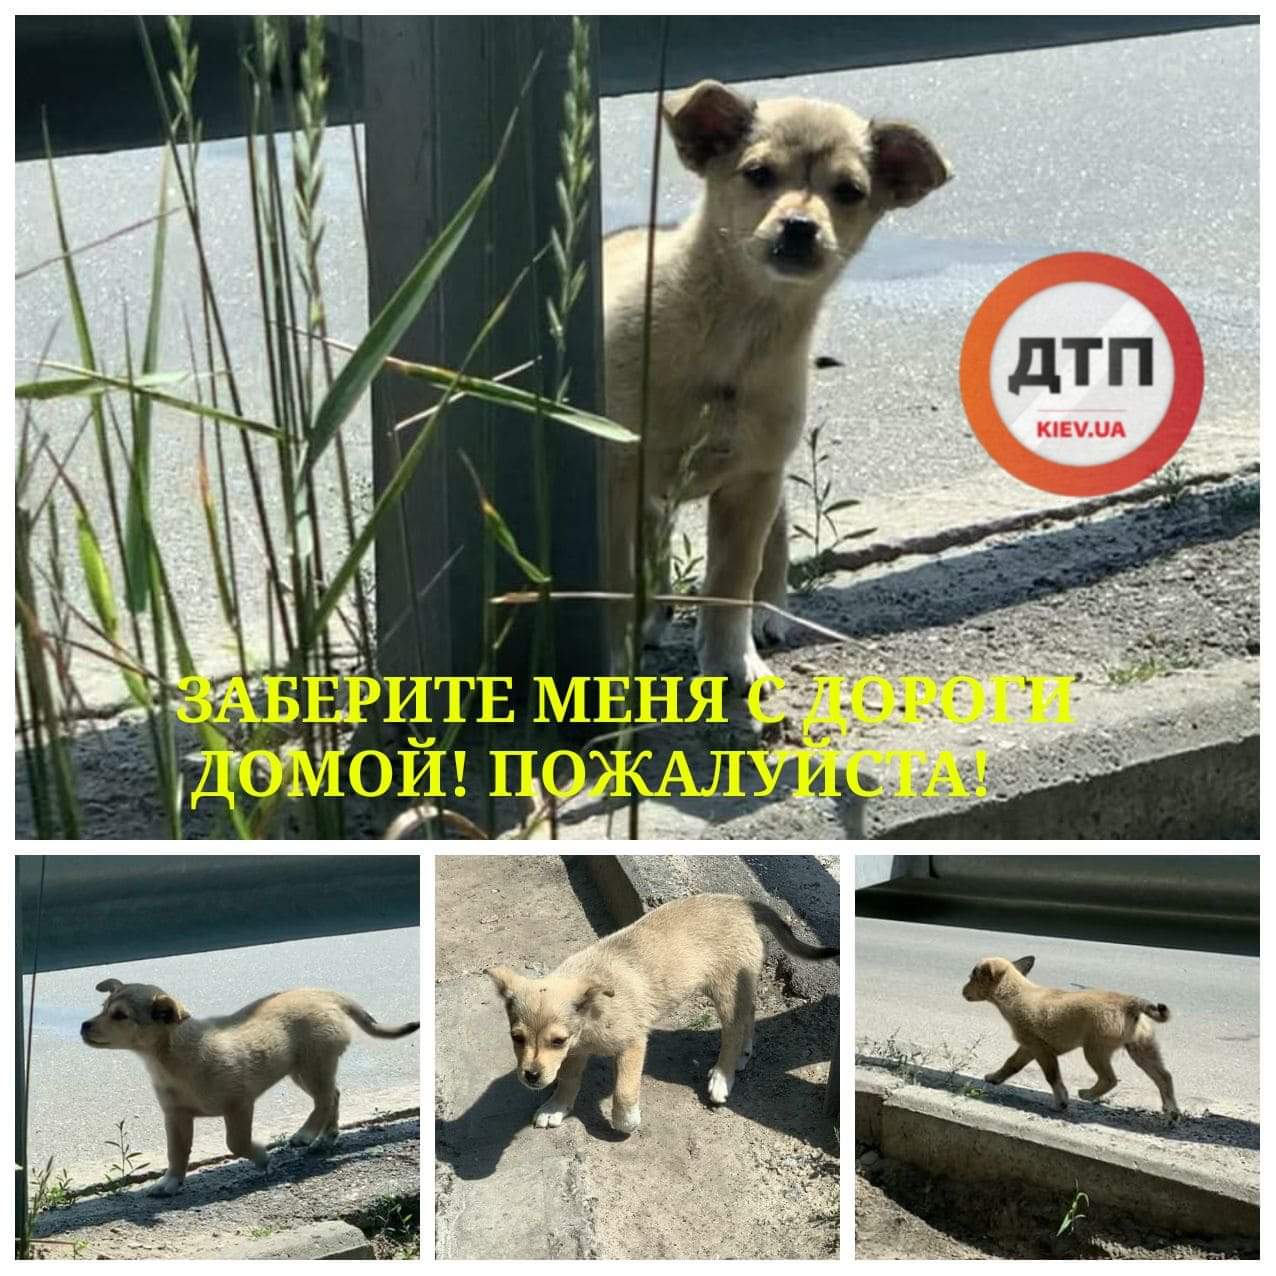 В Киеве выбросили маленького щенка около 6-полосной дороги: срочно ищем новый дом